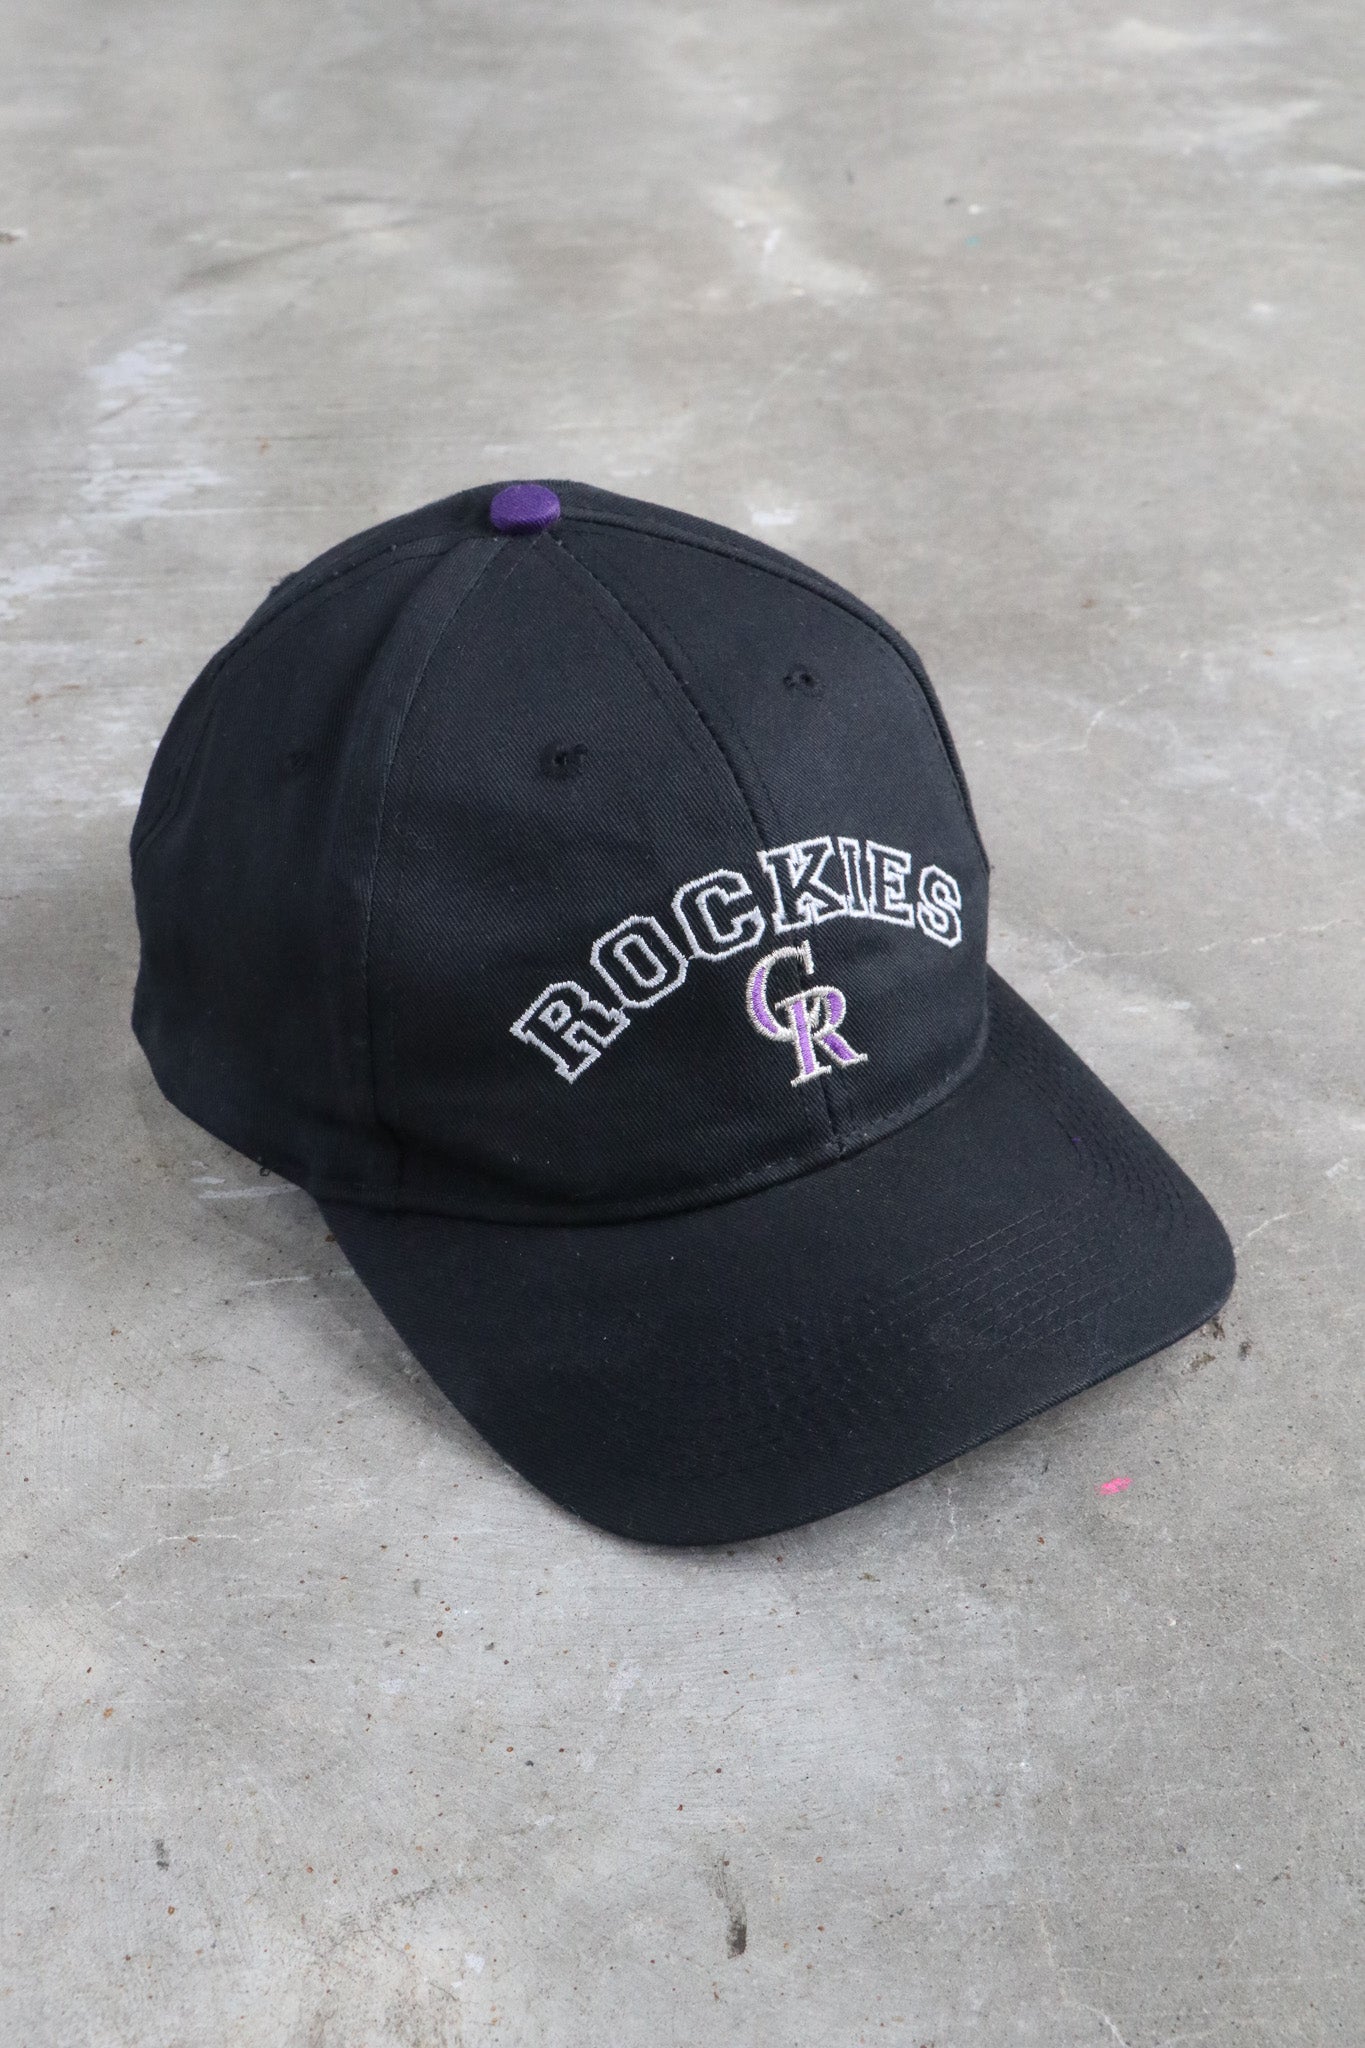 Vintage MLB Rockies Embroidered Hat